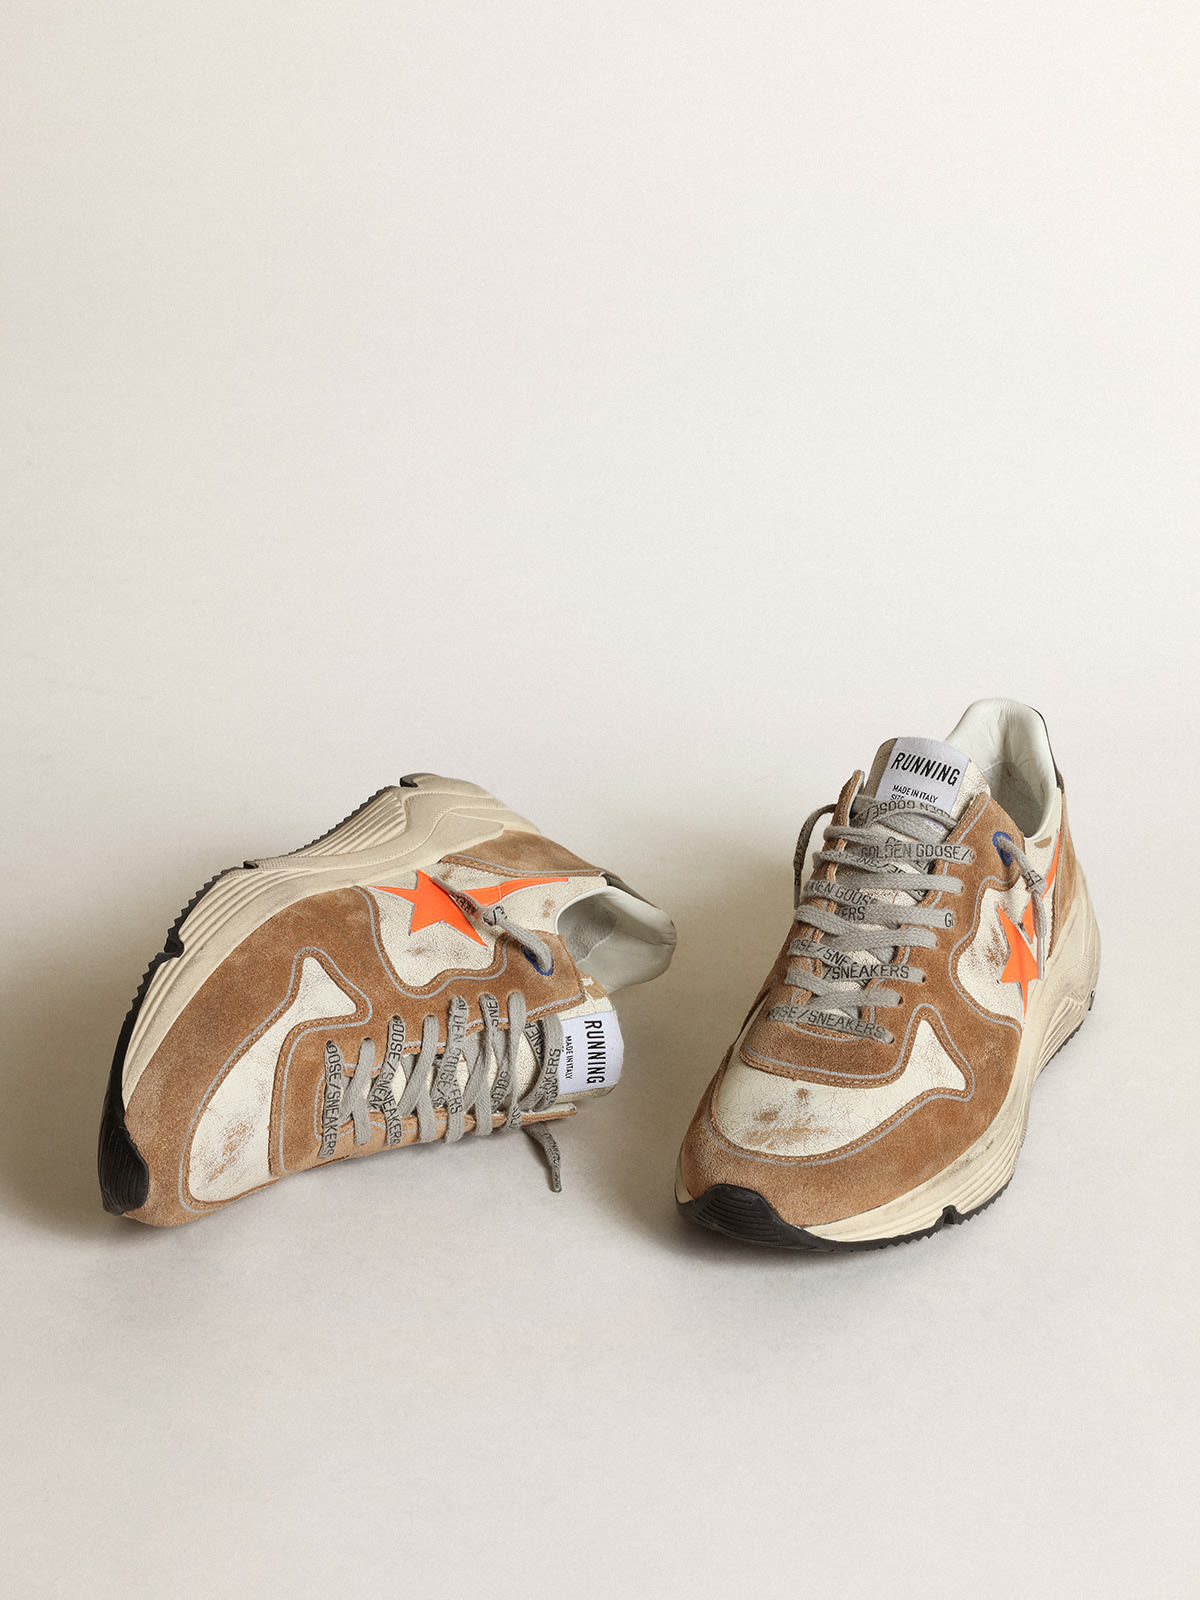 Golden Goose - Sneakers Running Sole LTD en cuir brillant blanc et daim couleur tabac avec étoile en cuir orange fluo in 